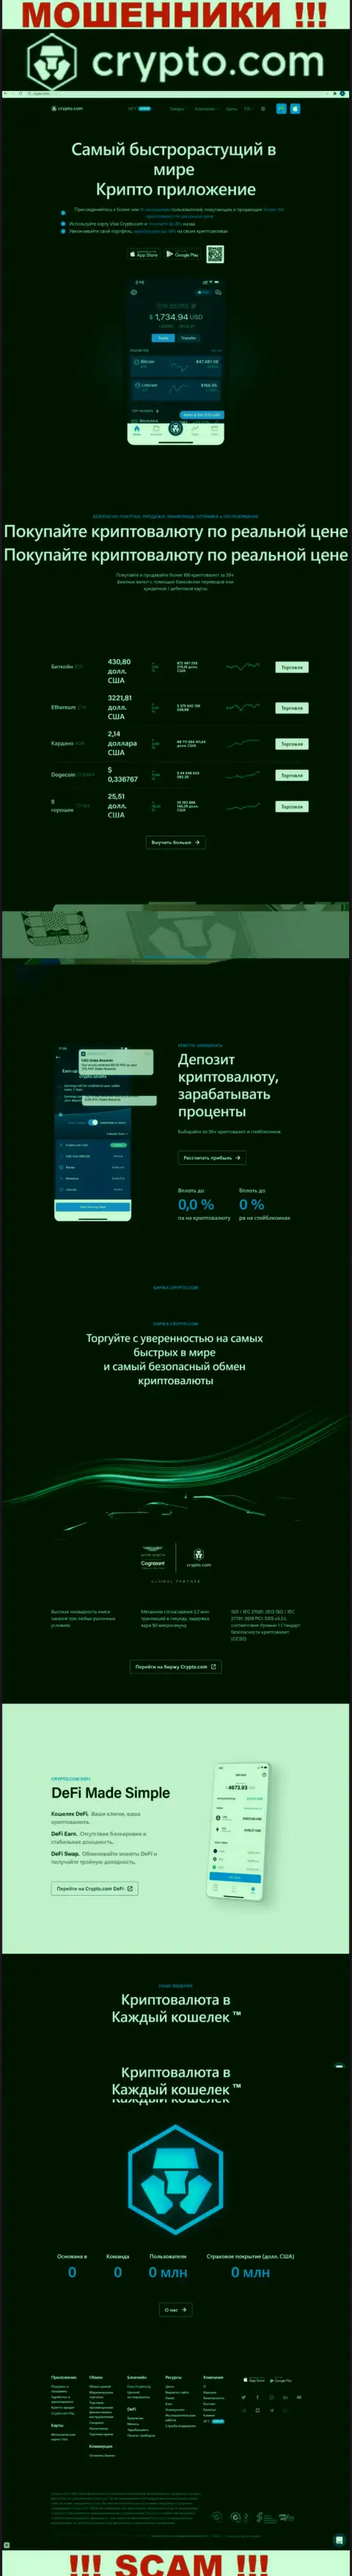 Официальный сайт мошенников КриптоКом, забитый материалами для лохов